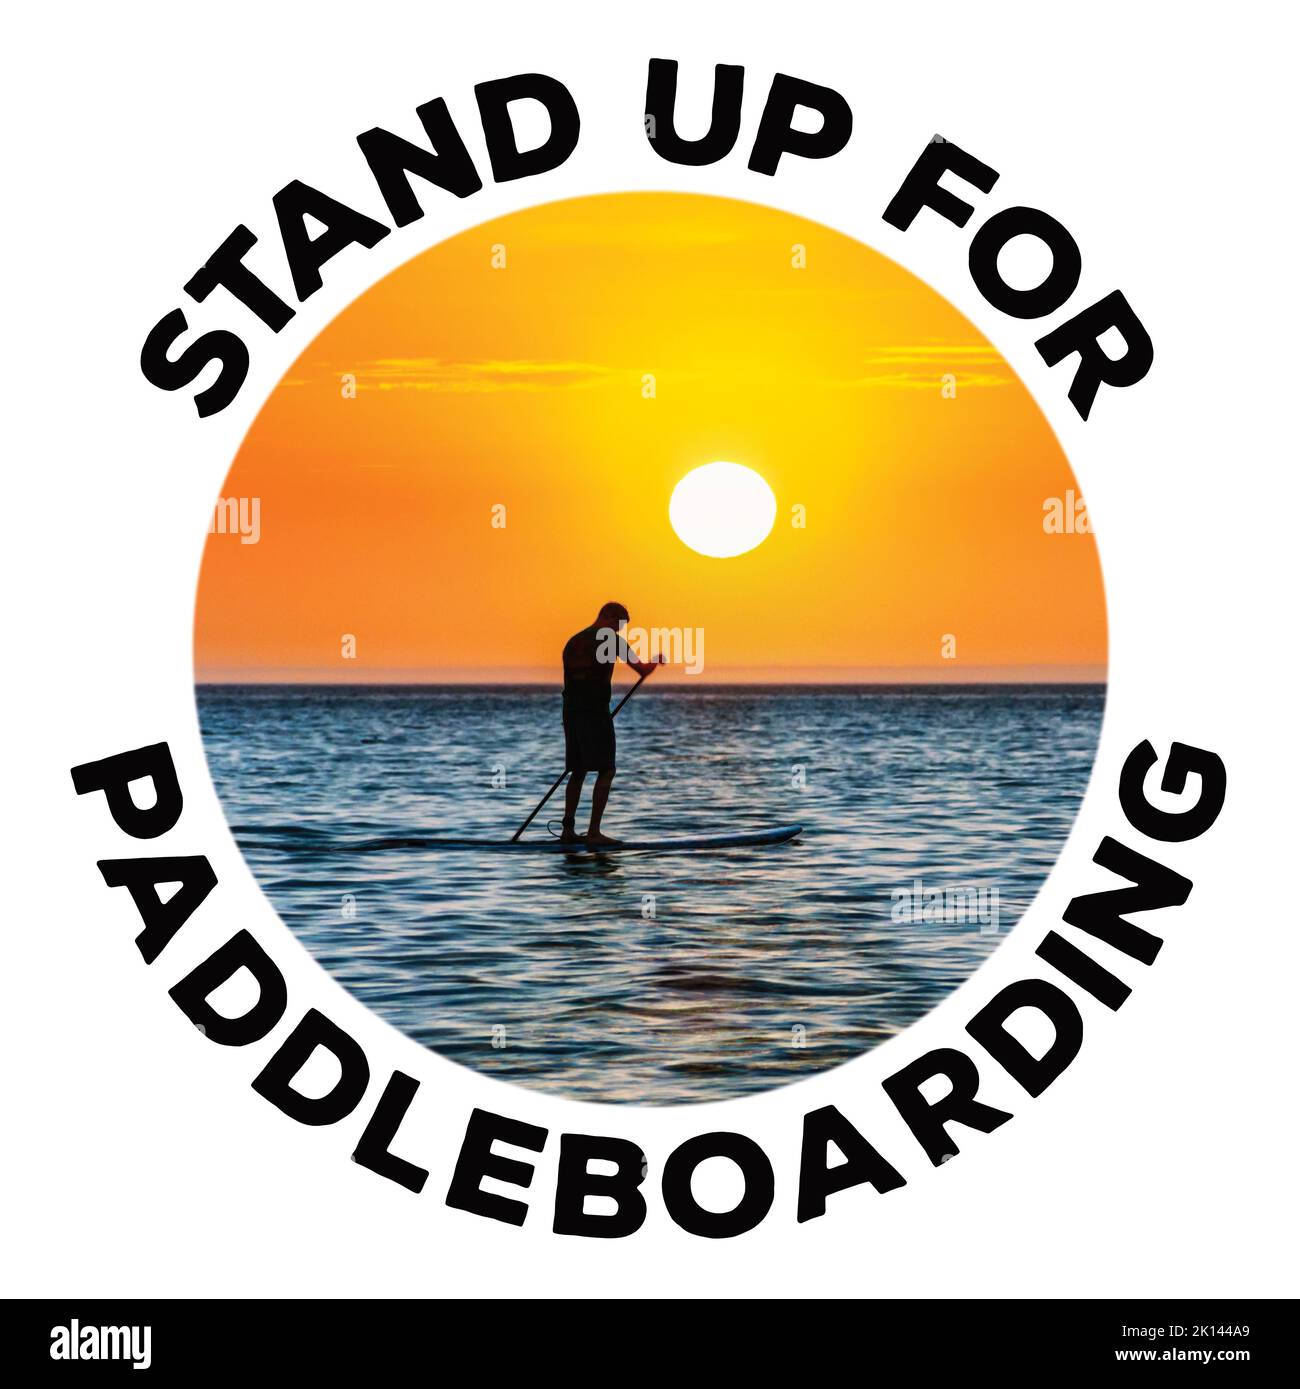 Kreisförmiges Bild eines einförmigen Paddlebarders gegen die untergehende Sonne, umgeben von der Bildunterschrift :Stand up for Paddleboarding' Stockfoto